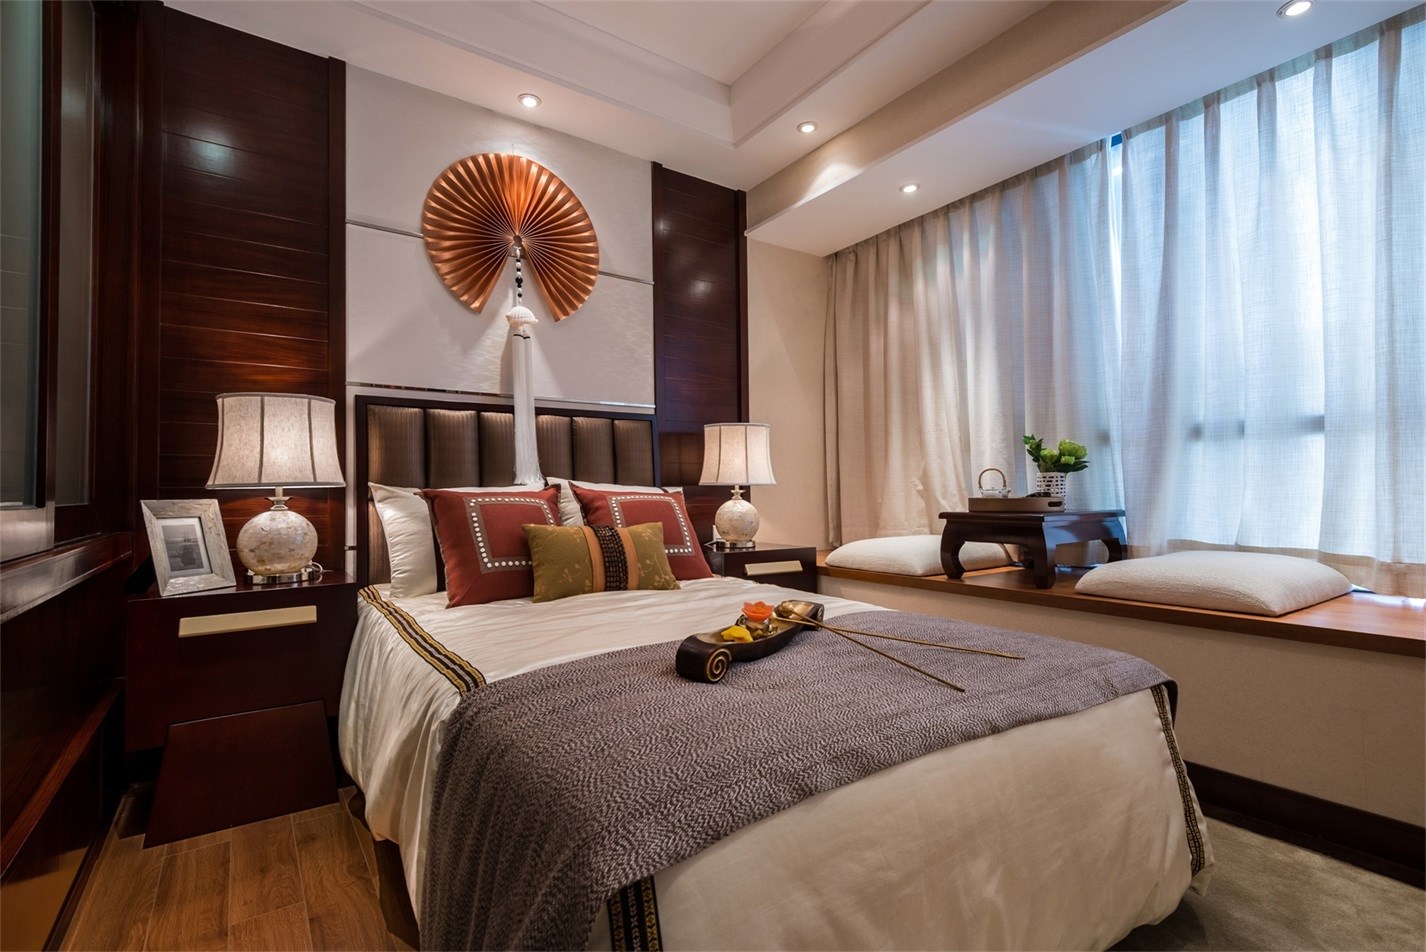 次卧清浅配色给人舒适、平和之，十分适合用在卧室等休息场所。